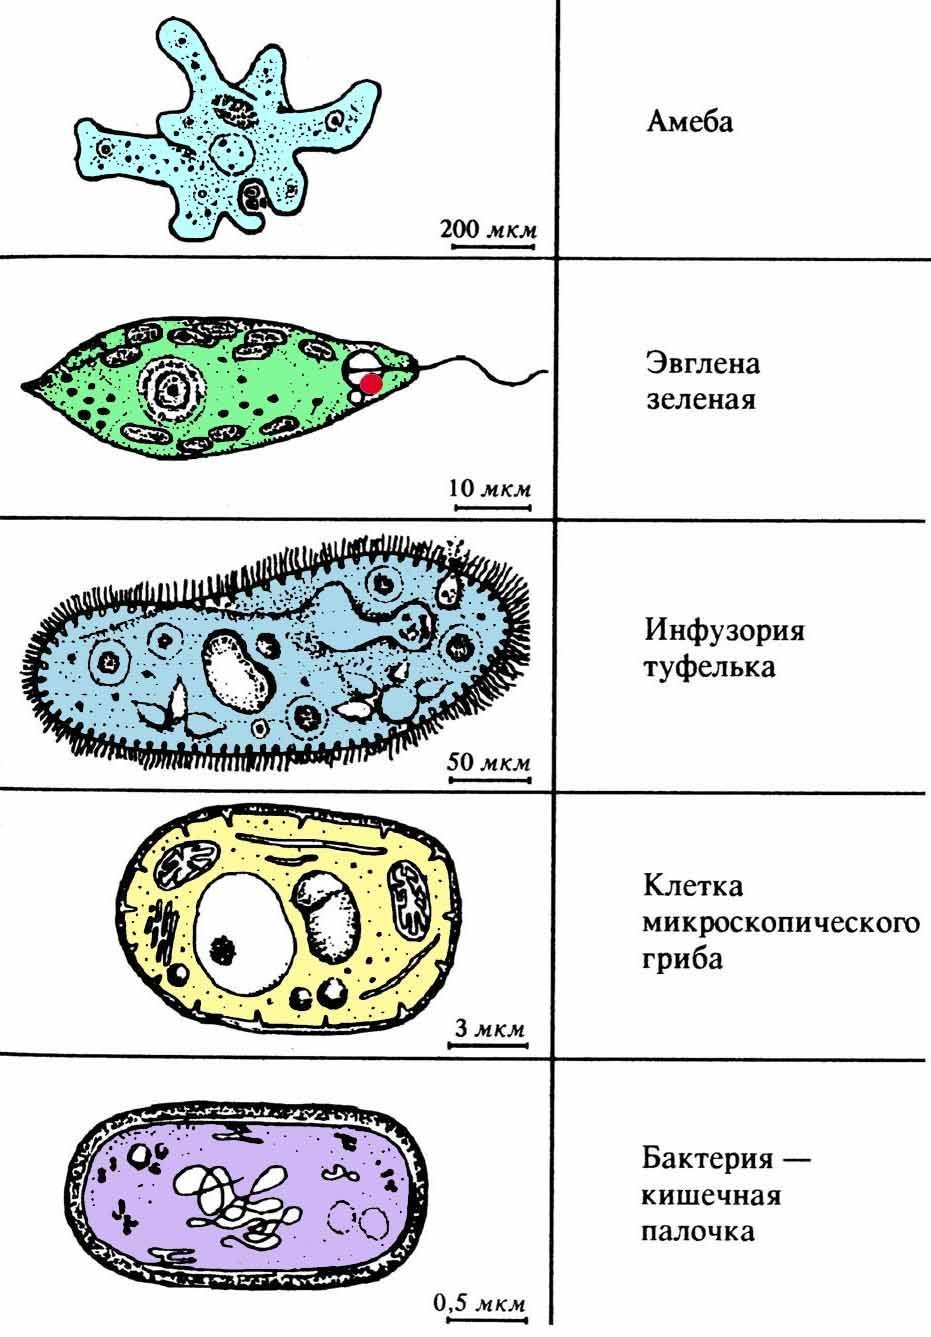 Амеба обыкновенная и инфузория туфелька. Клетка по биологии инфузория туфелька. Инфузории протисты. Одноклеточные бактерии названия. Простейшие одноклеточные организмы.